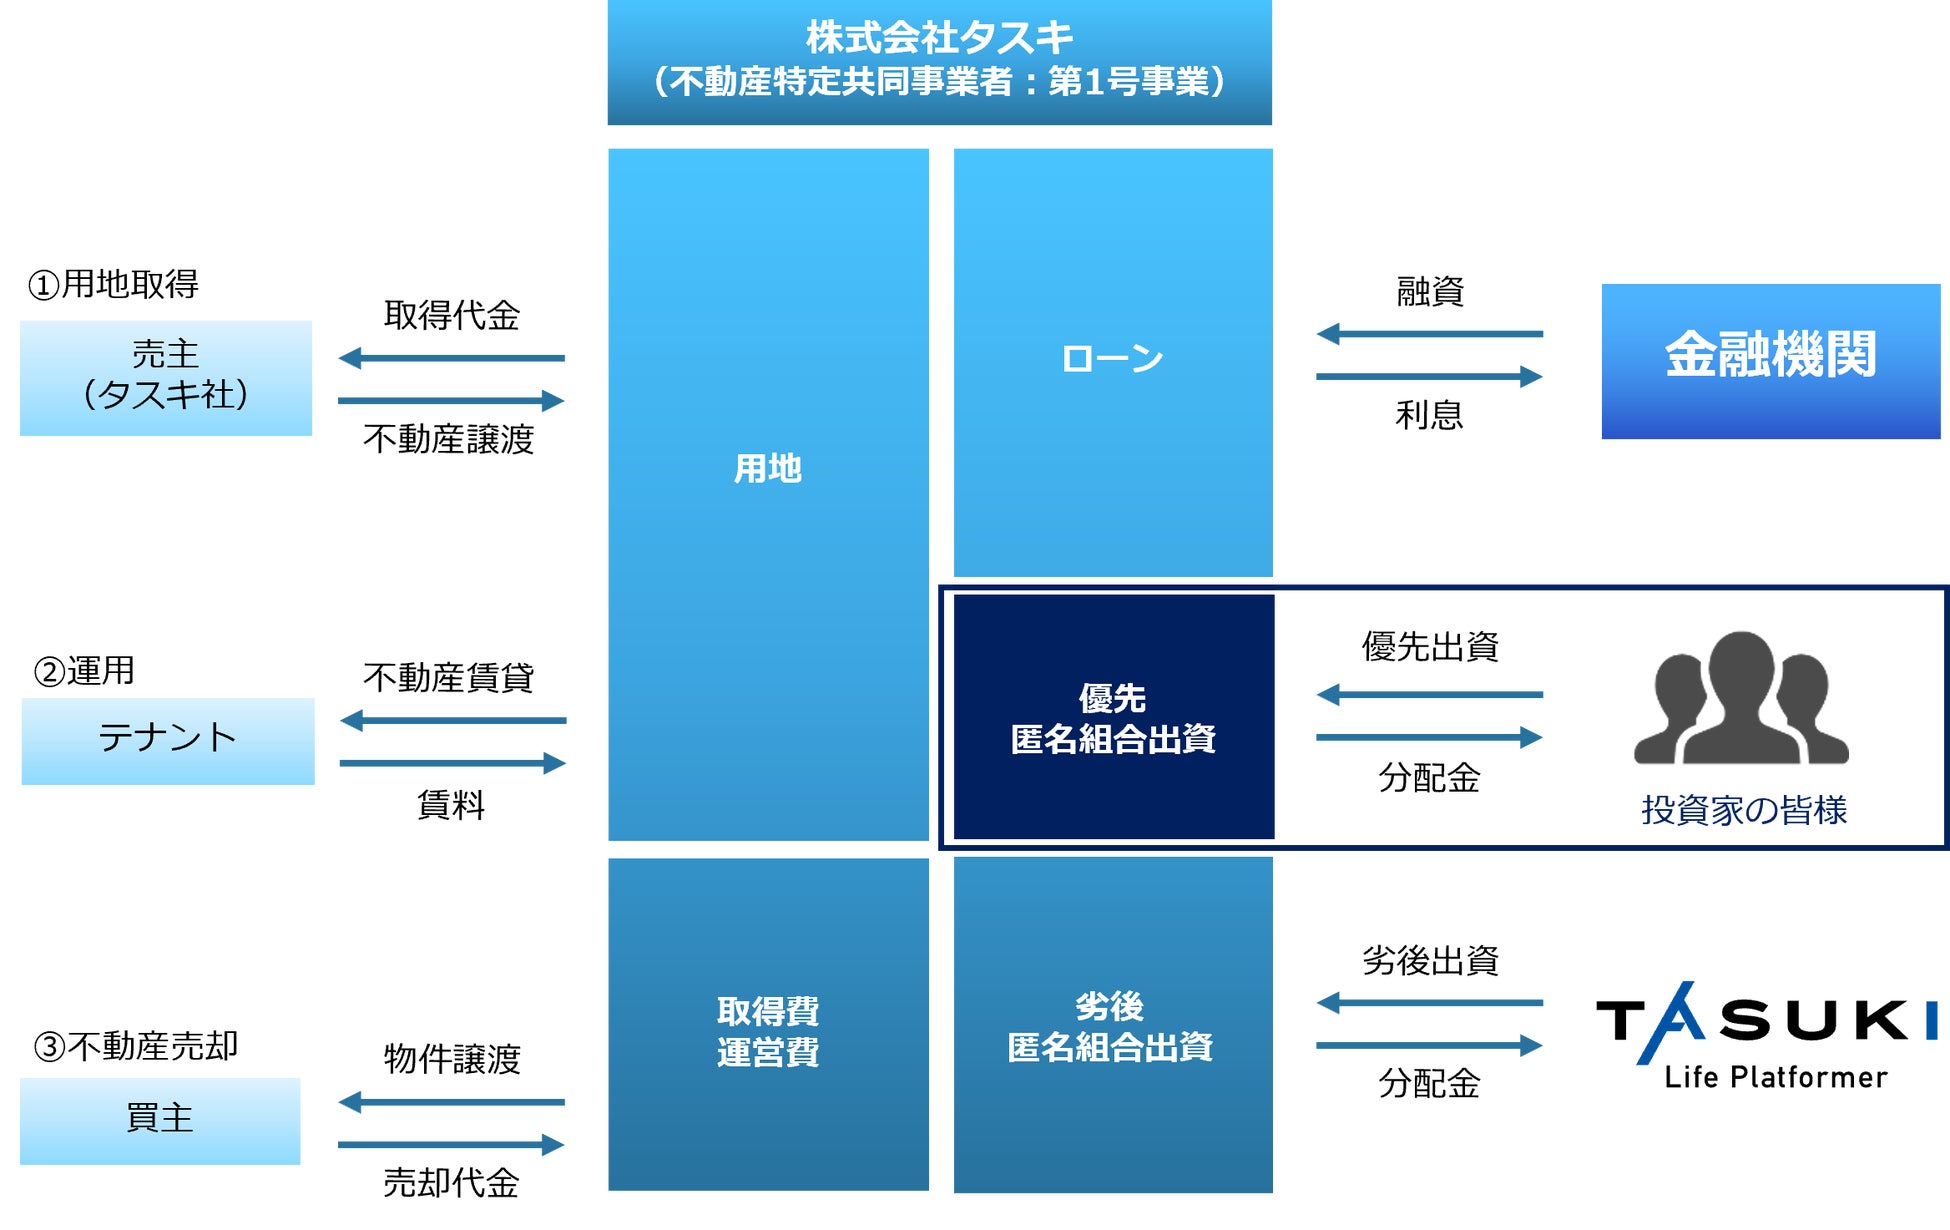 東京都が実施する、動産・債権担保融資（ABL）制度の保証機関に参加【GMOペイメントゲートウェイ】